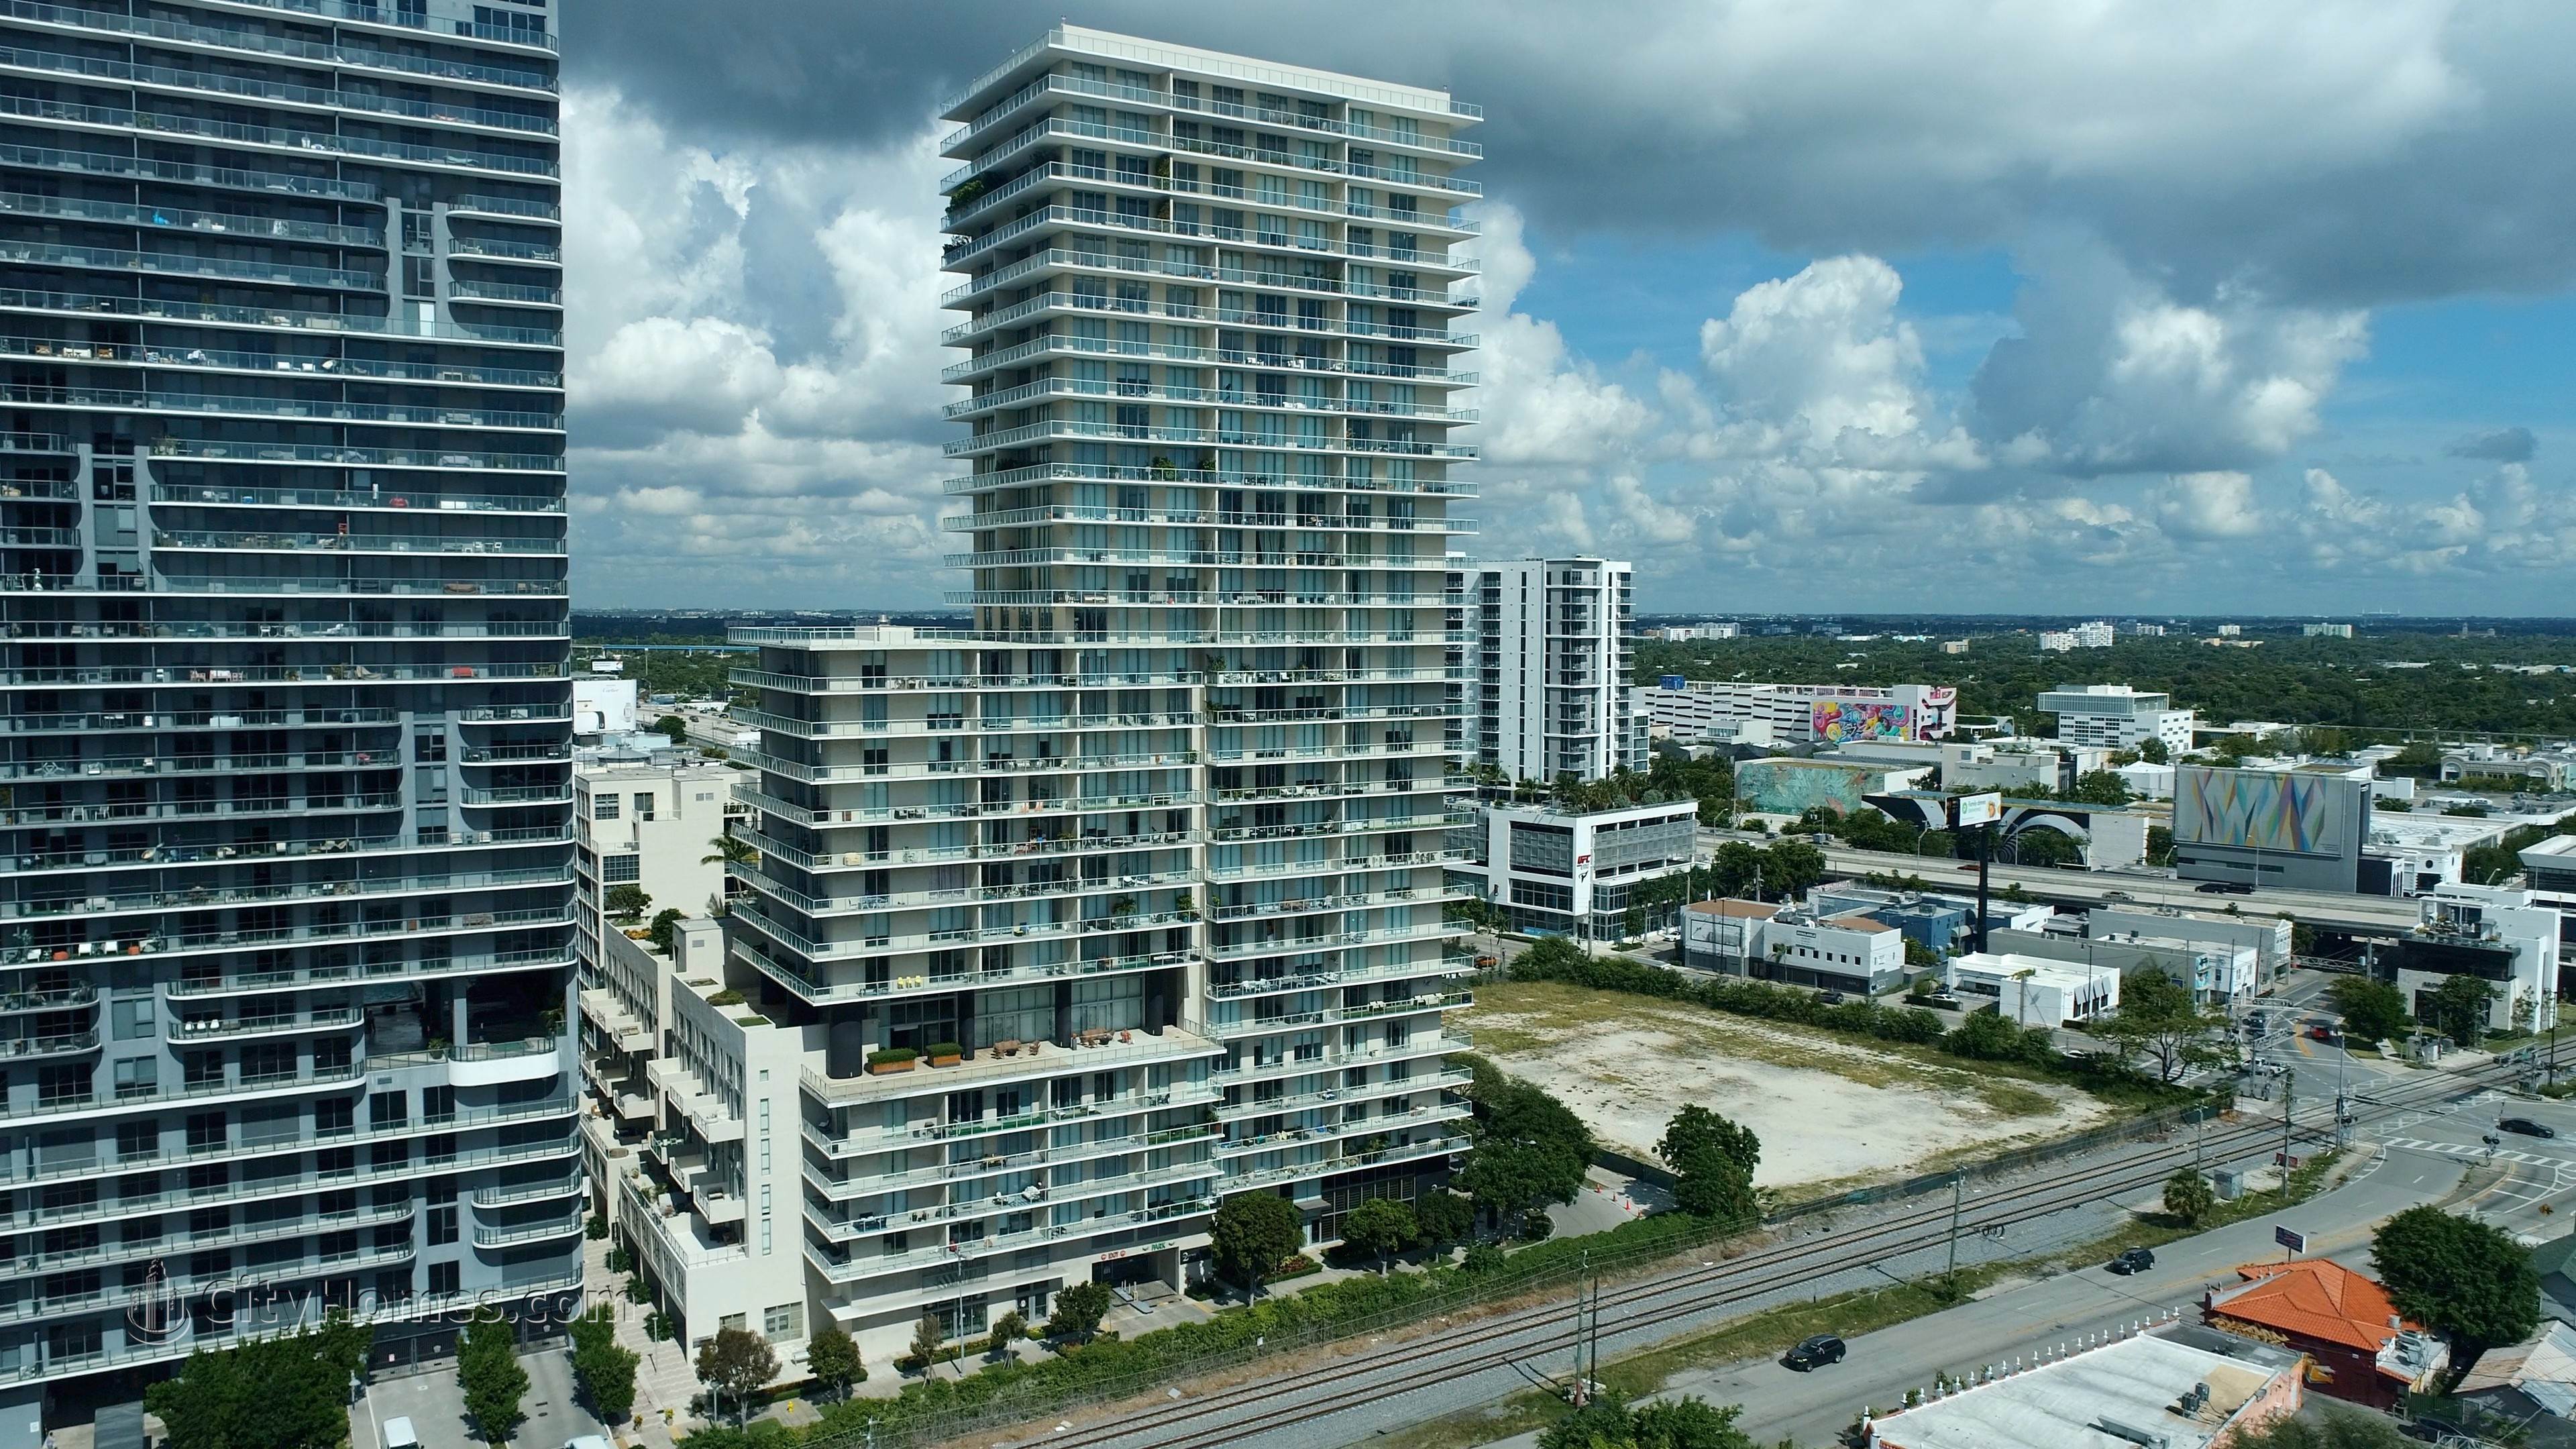 3. Two Midtown建於 3470 E Coast Avenue, Midtown Miami, Miami, FL 33137